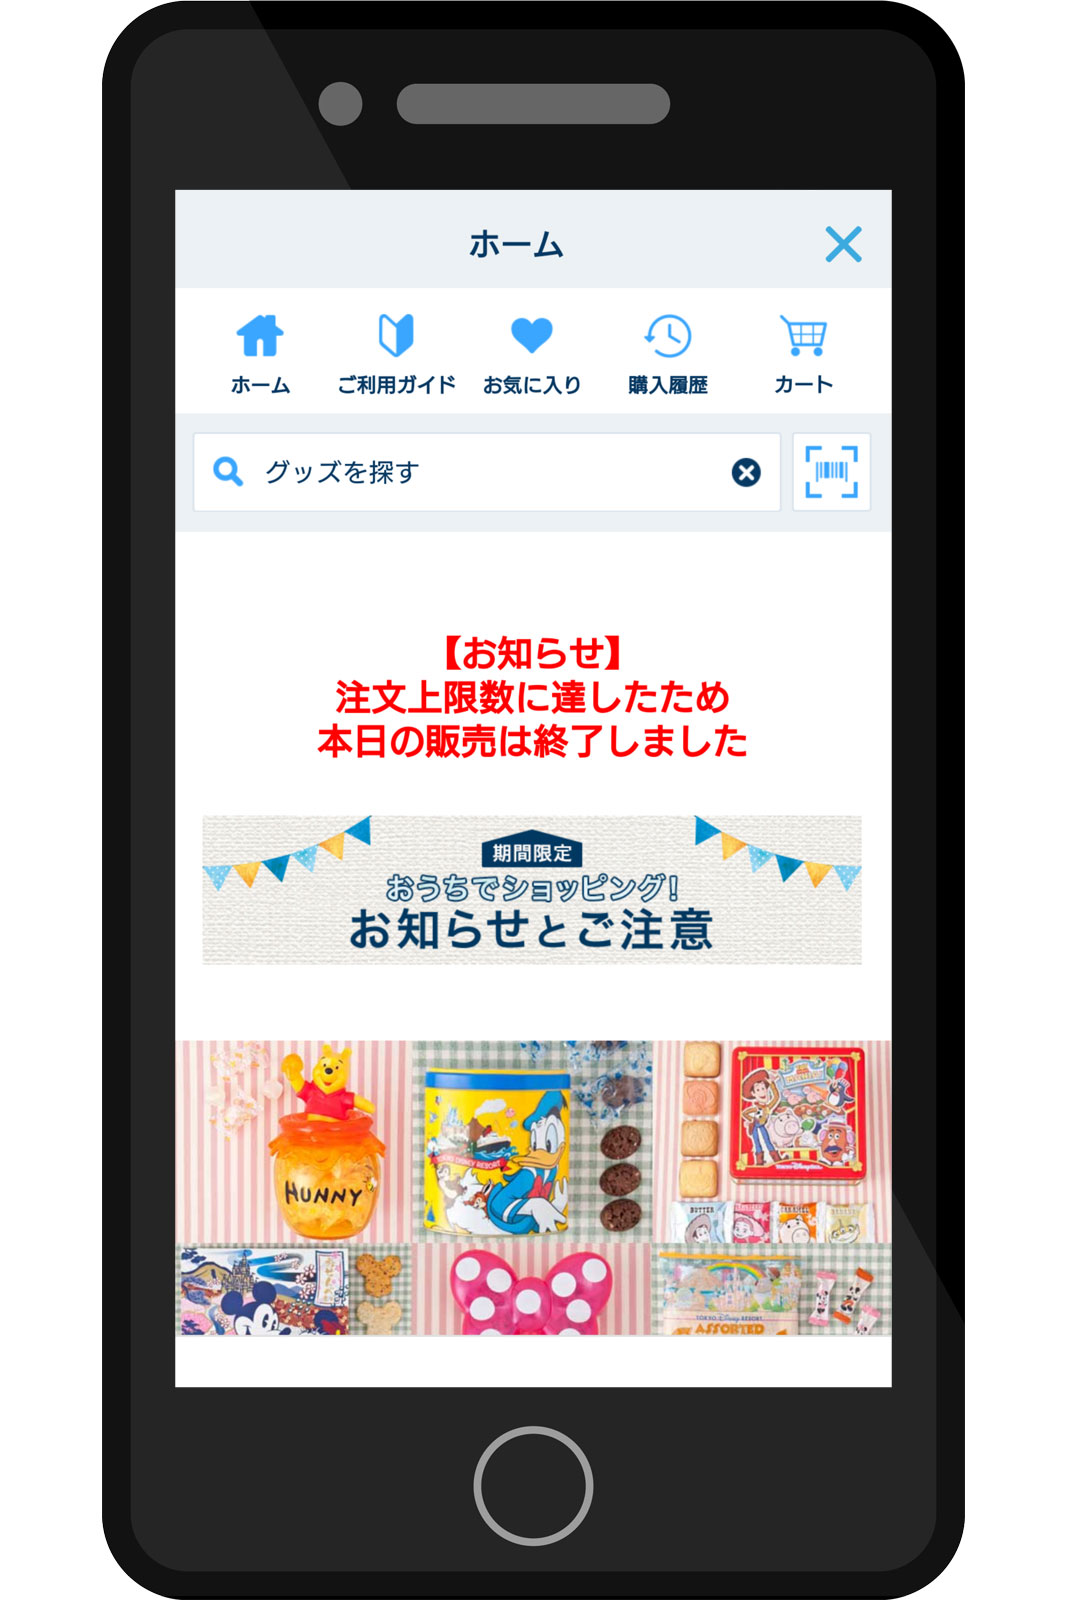 東京ディズニー・アプリ グッズのオンライン販売